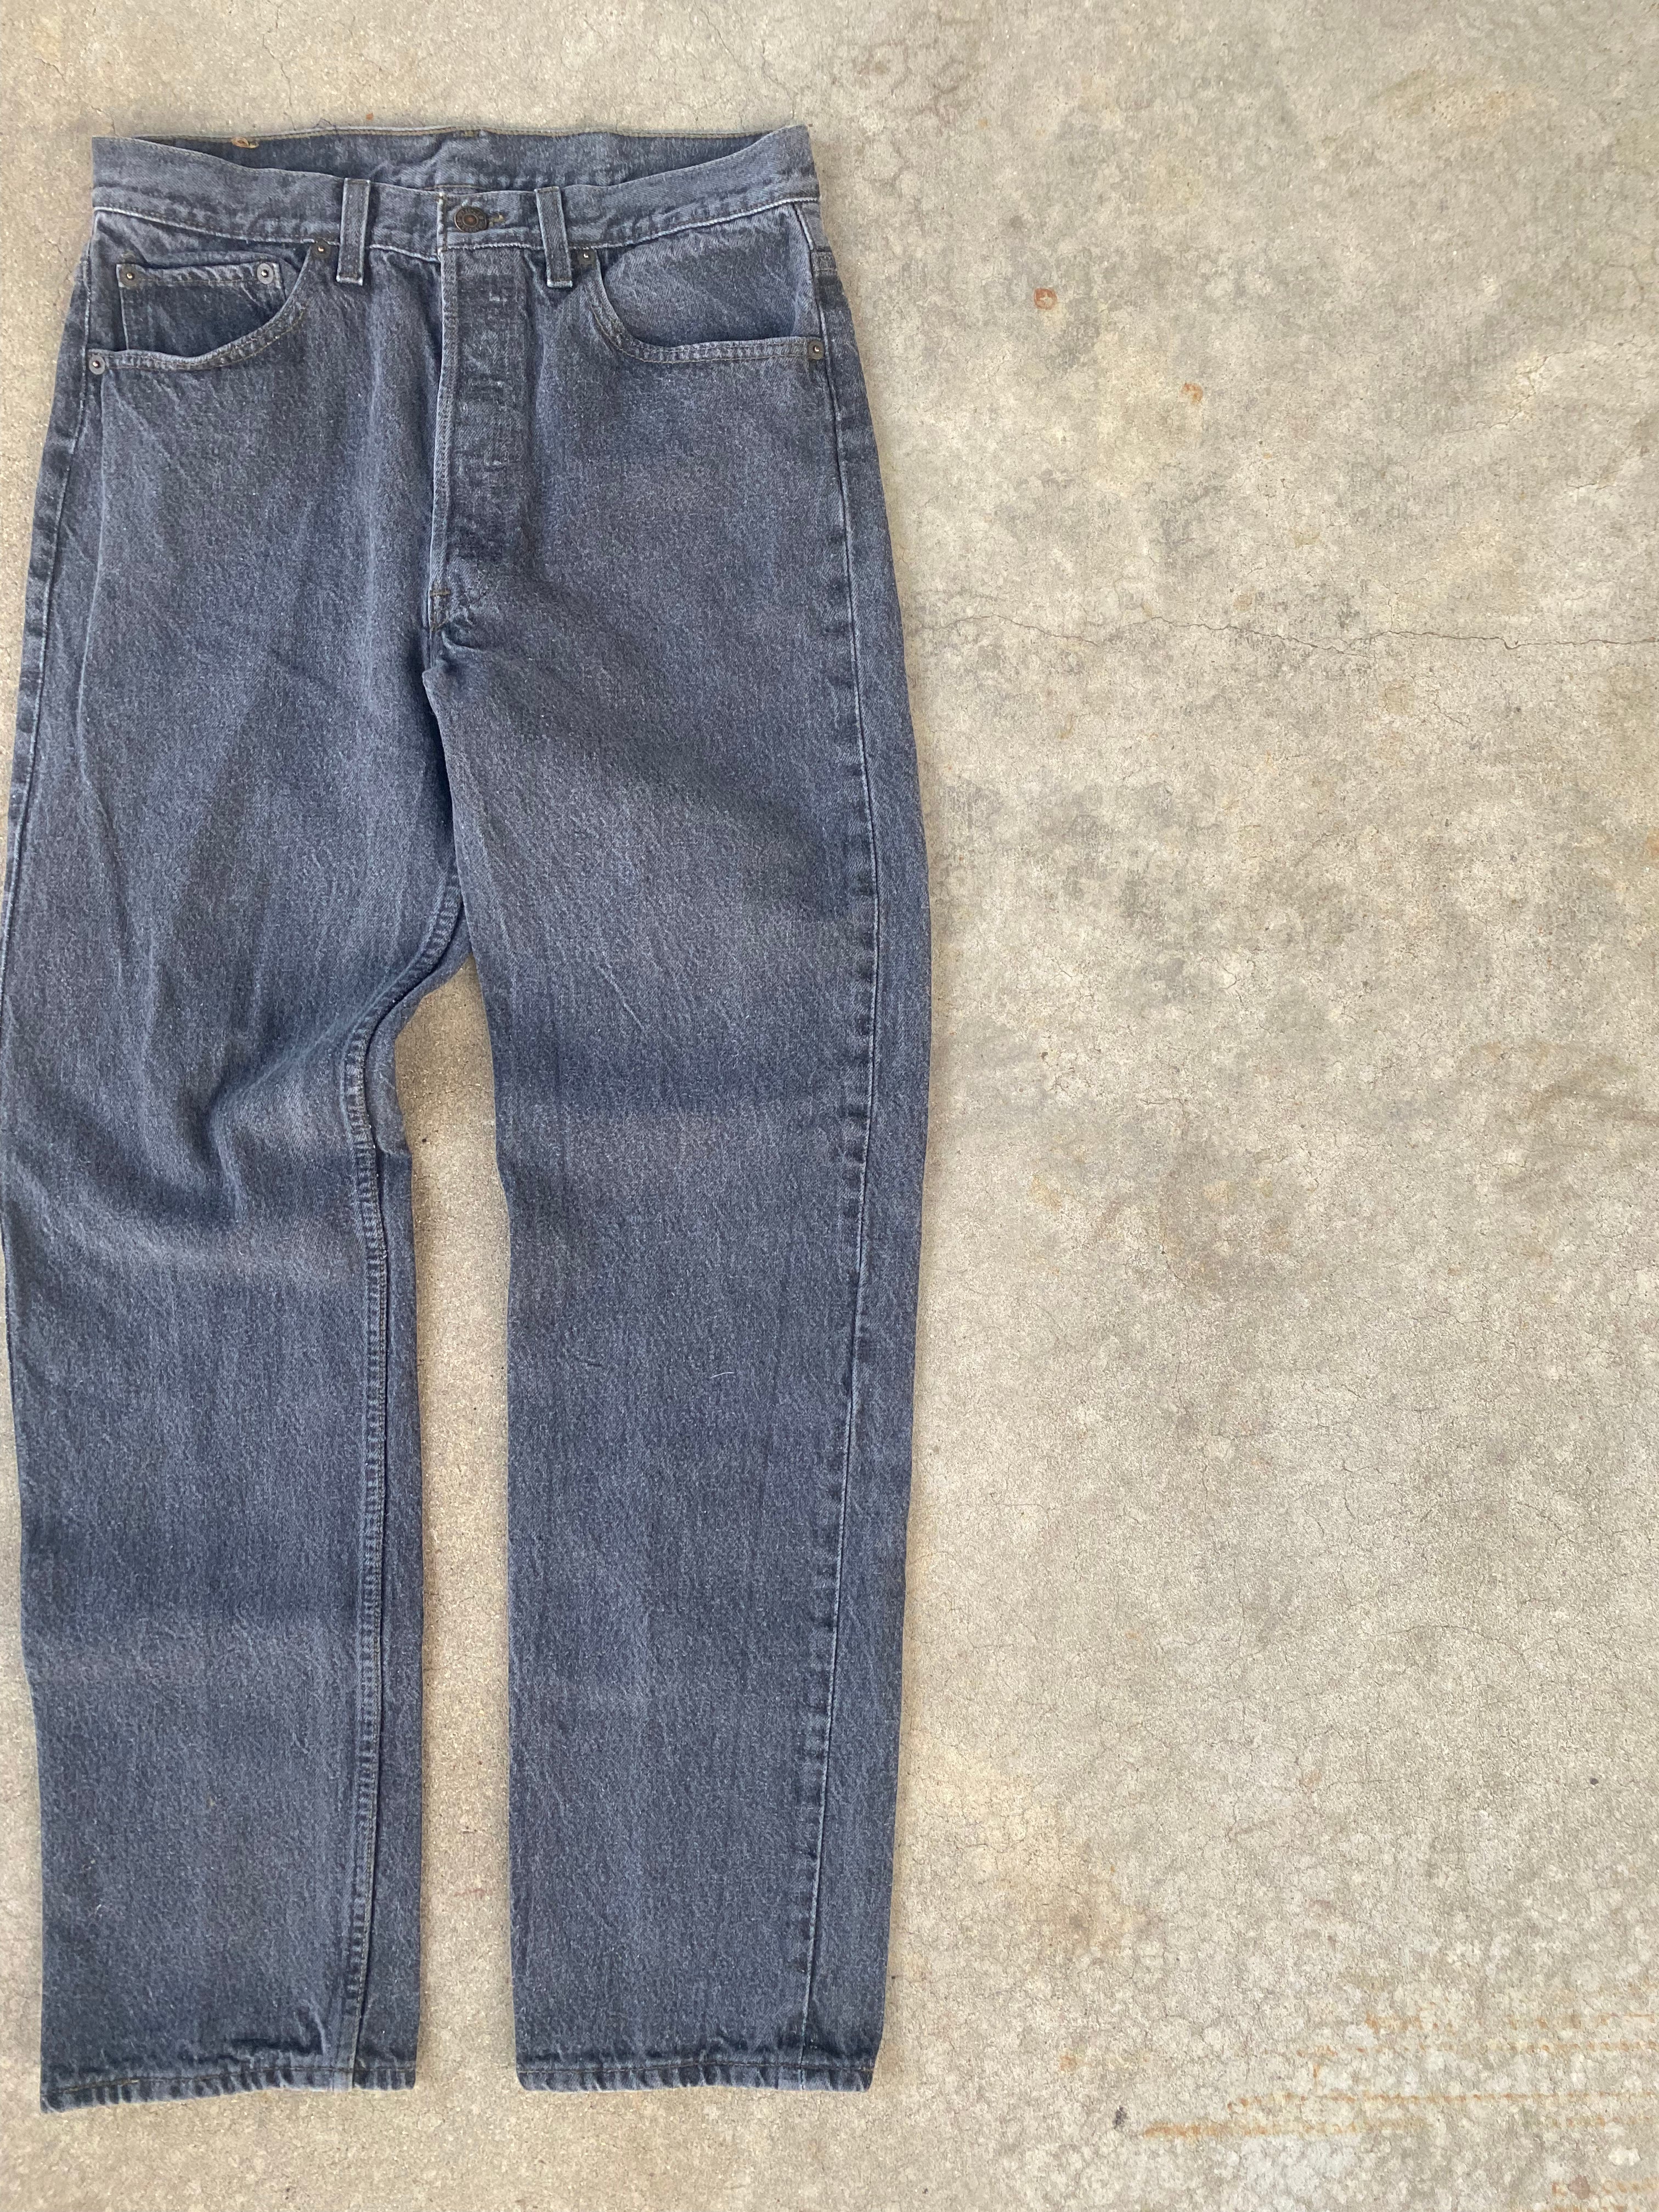 1993 Levi’s 501 Jeans